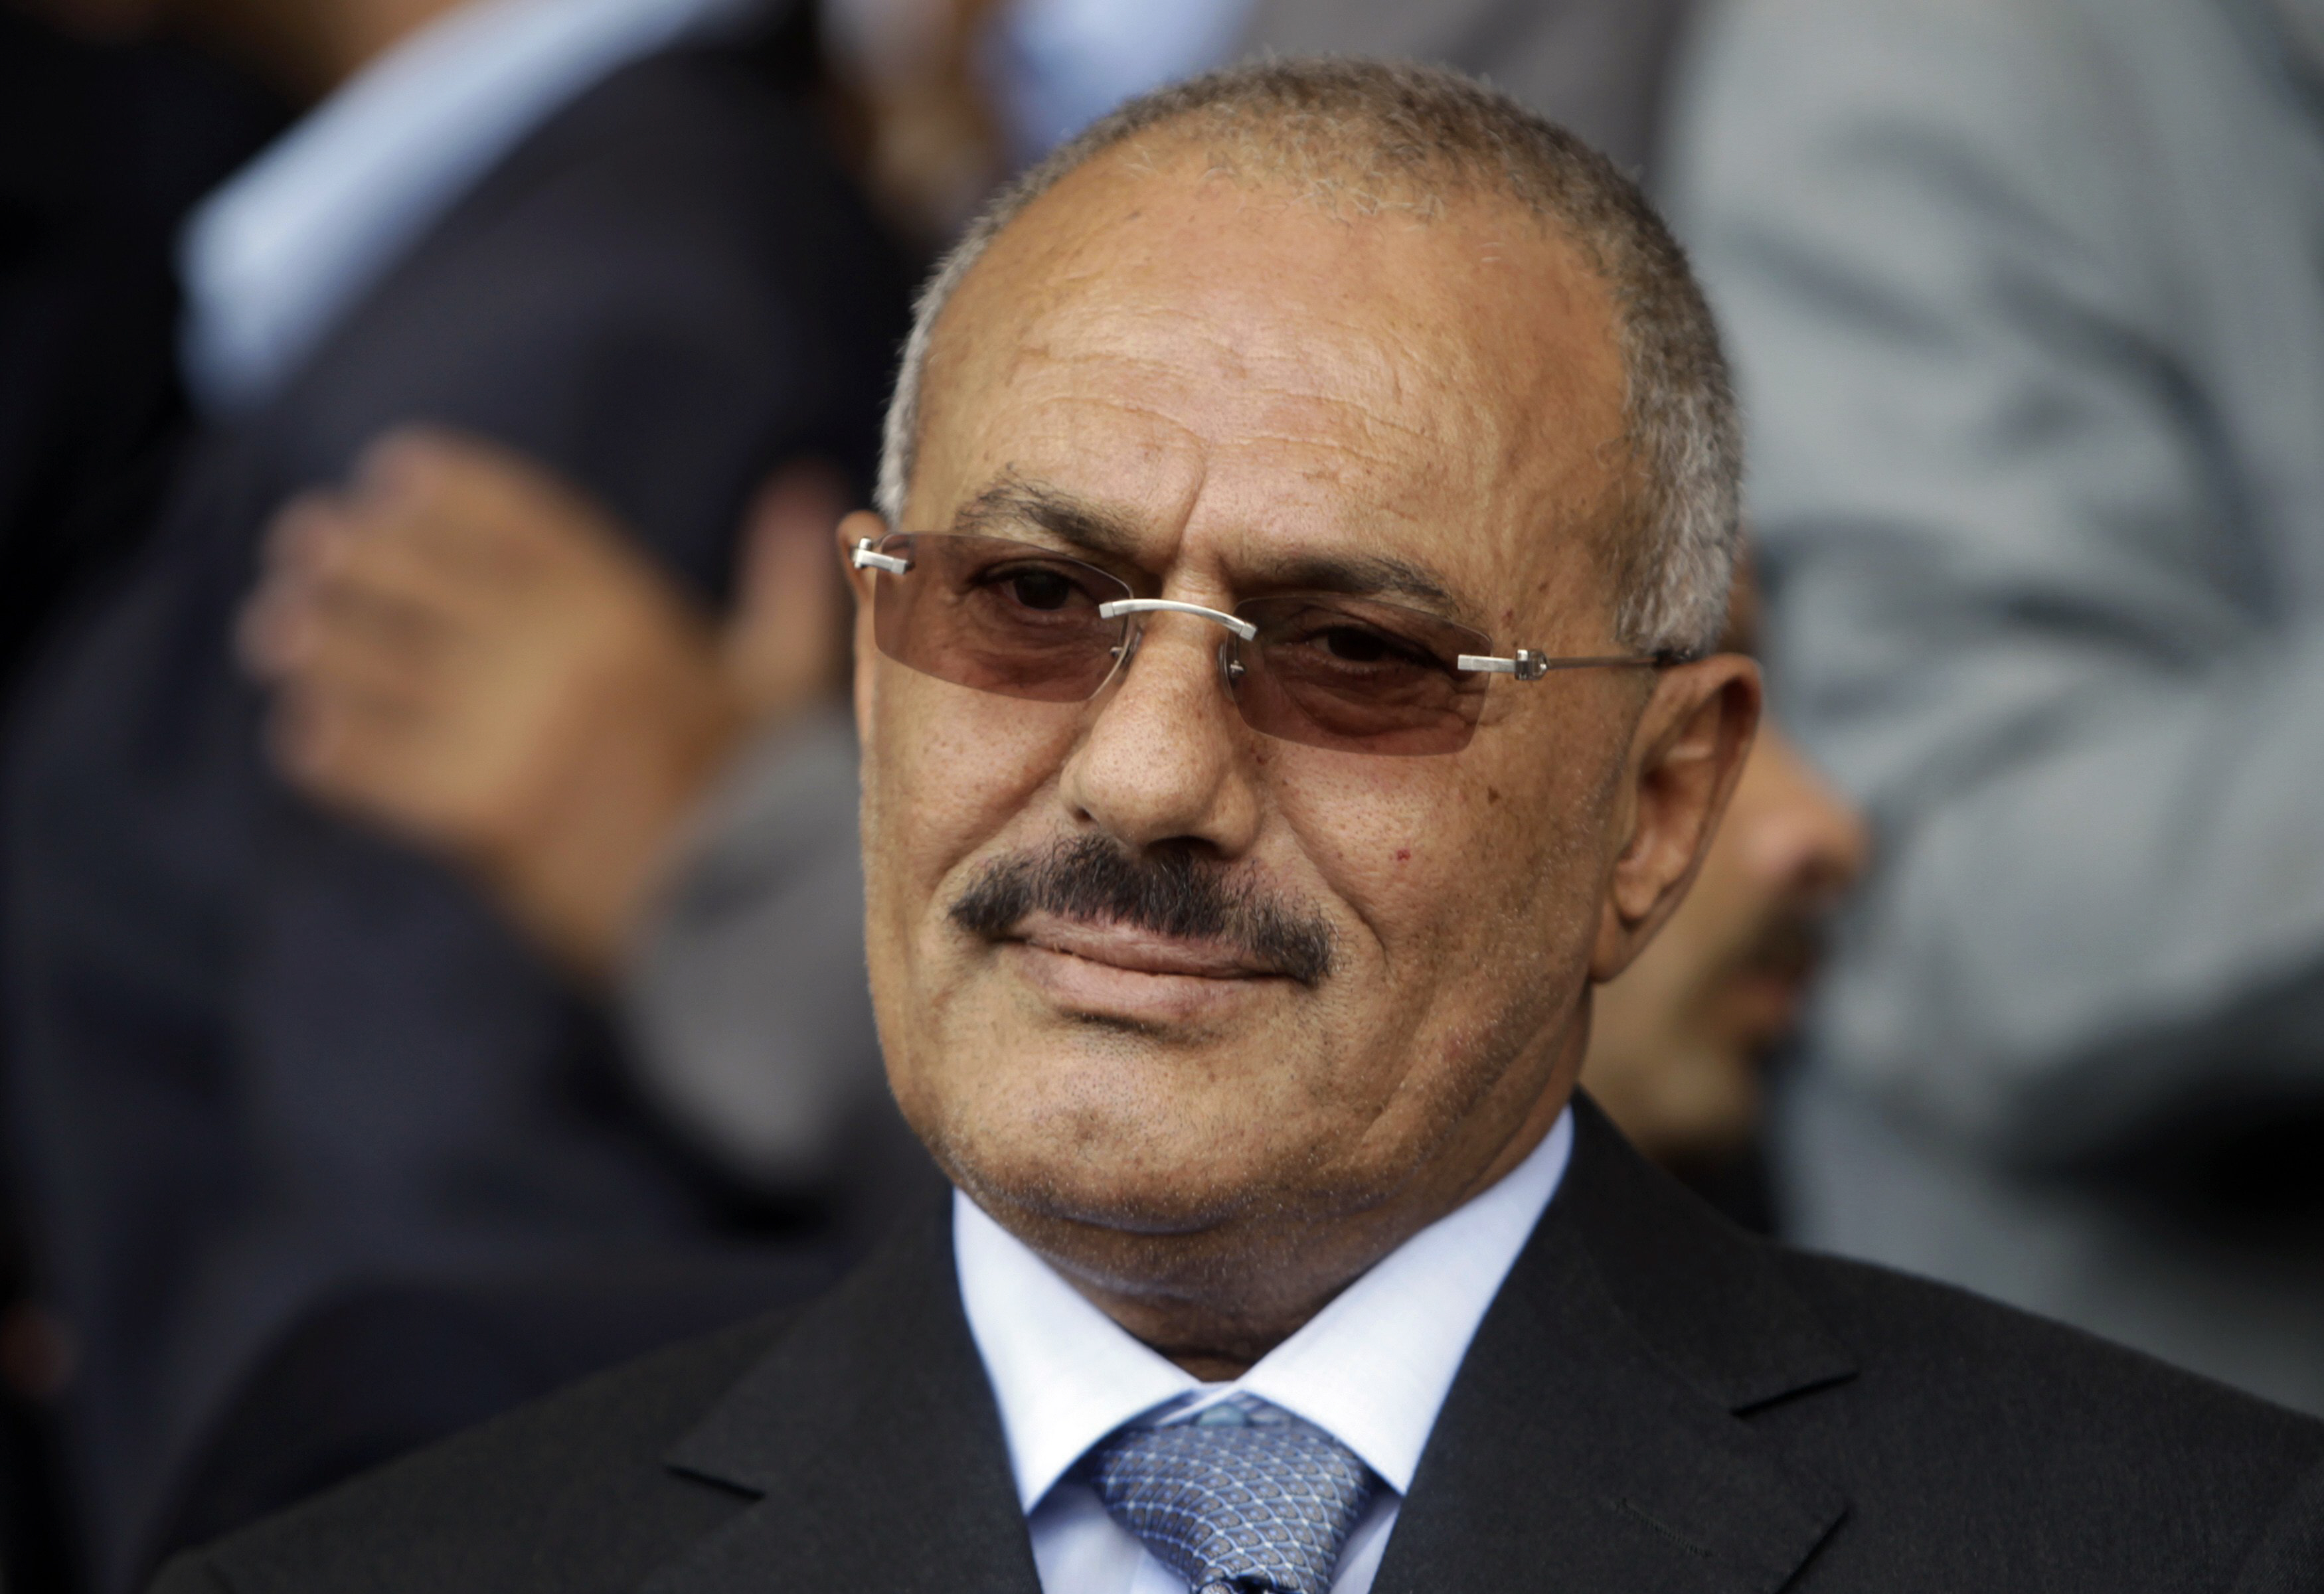  Yemen_president_Ali_Abdullah_Saleh-PHOTO-REUTERS.jpg